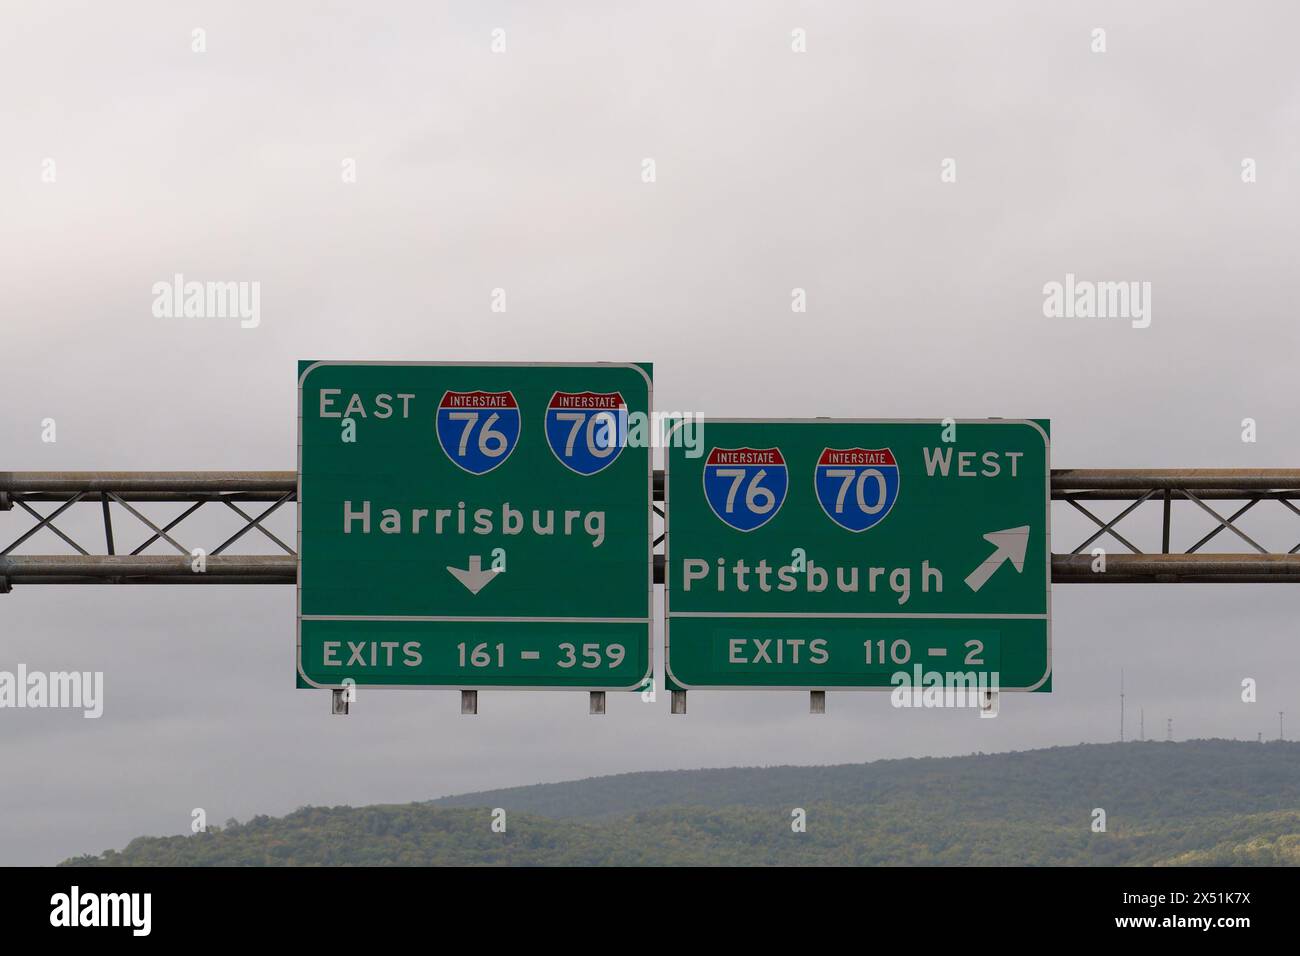 Panneaux de sortie pour l'Interstate 76 et l'Interstate 70, direction est vers Harrisburg, Pennsylvanie et direction ouest vers Pittsburgh, Pennsylvanie Banque D'Images